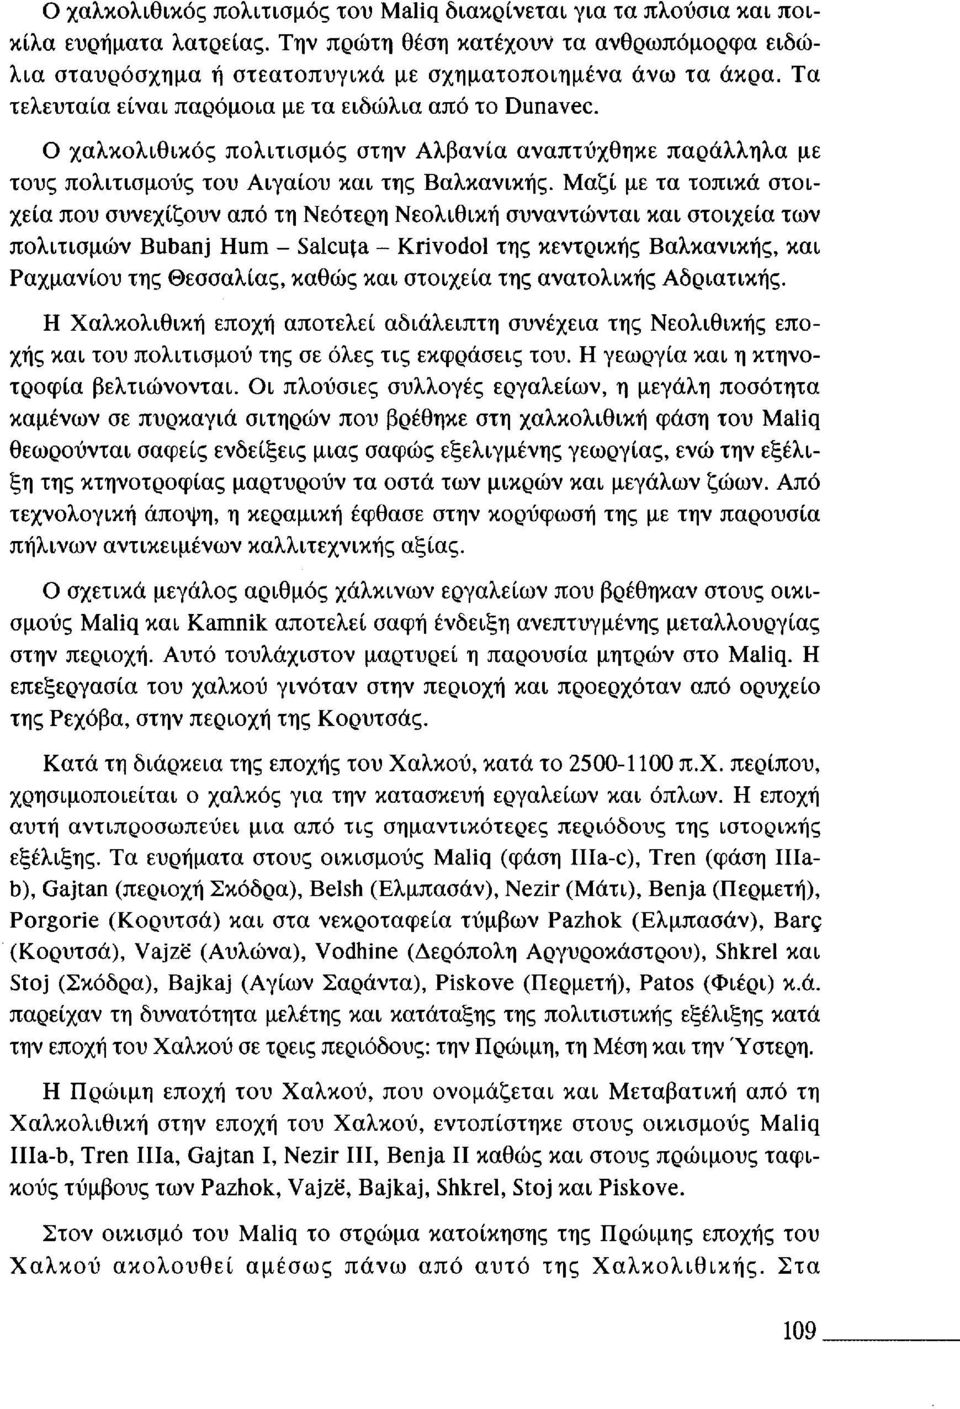 Μαζί με τα τοπικά στοιχεία που συνεχίζουν από τη Νεότερη Νεολιθική συναντώνται και στοιχεία των πολιτισμών Bubanj Hum - Salcuja - Krivodol της κεντρικής Βαλκανικής, και Ραχμανίου της Θεσσαλίας, καθώς